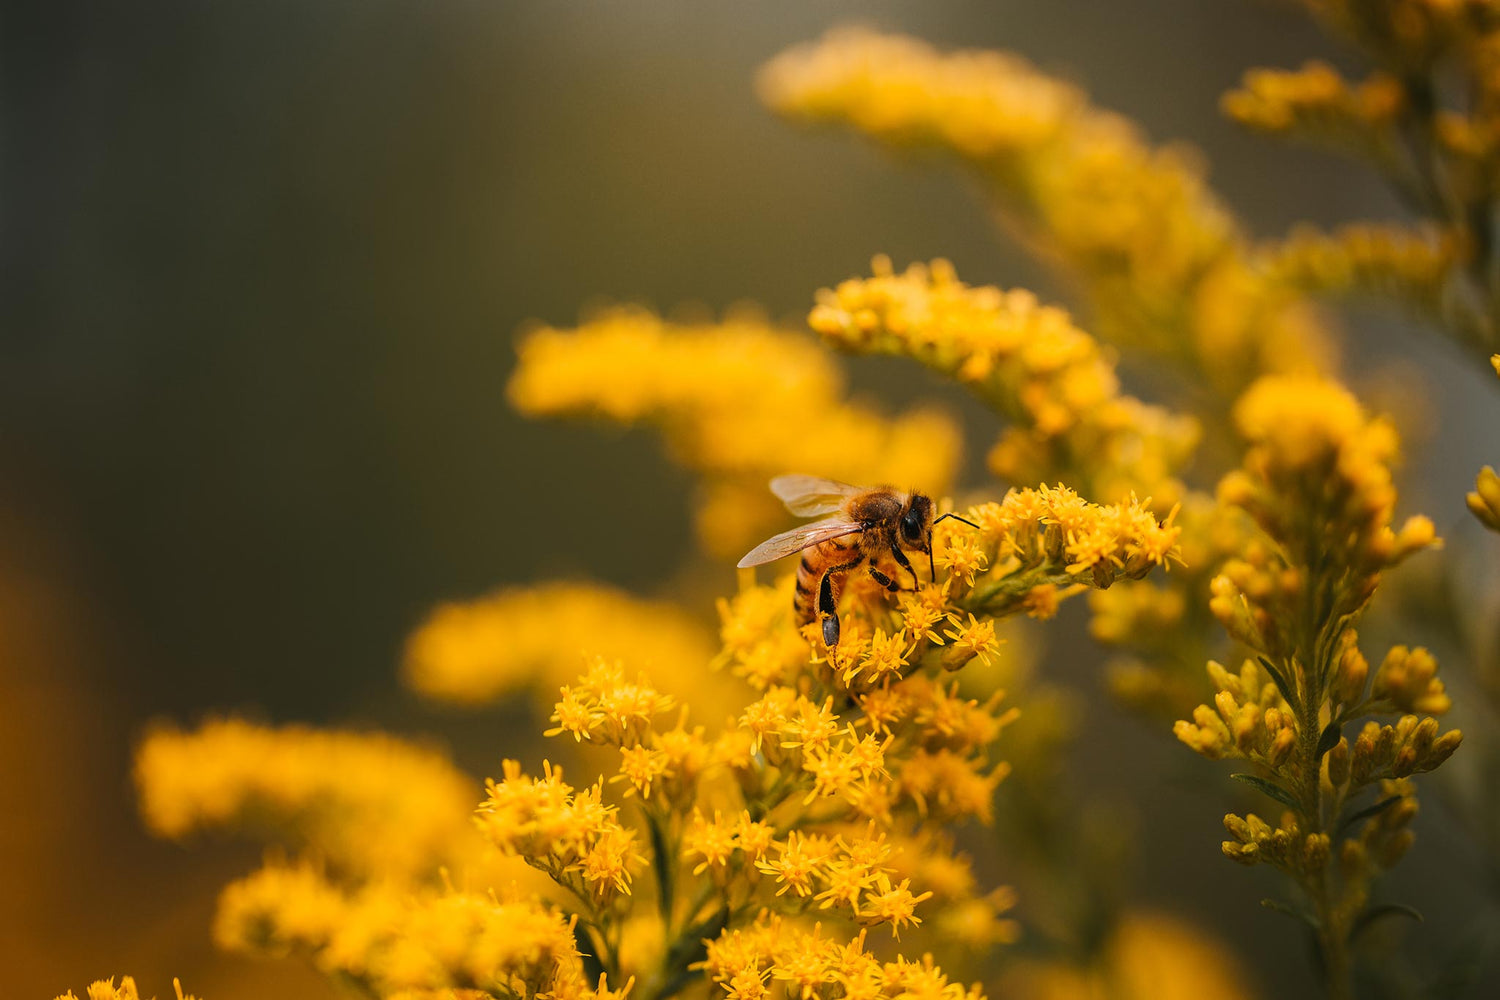 zdjęcie przedstawia żółte kwiaty i siedzącą na nich pszczołę